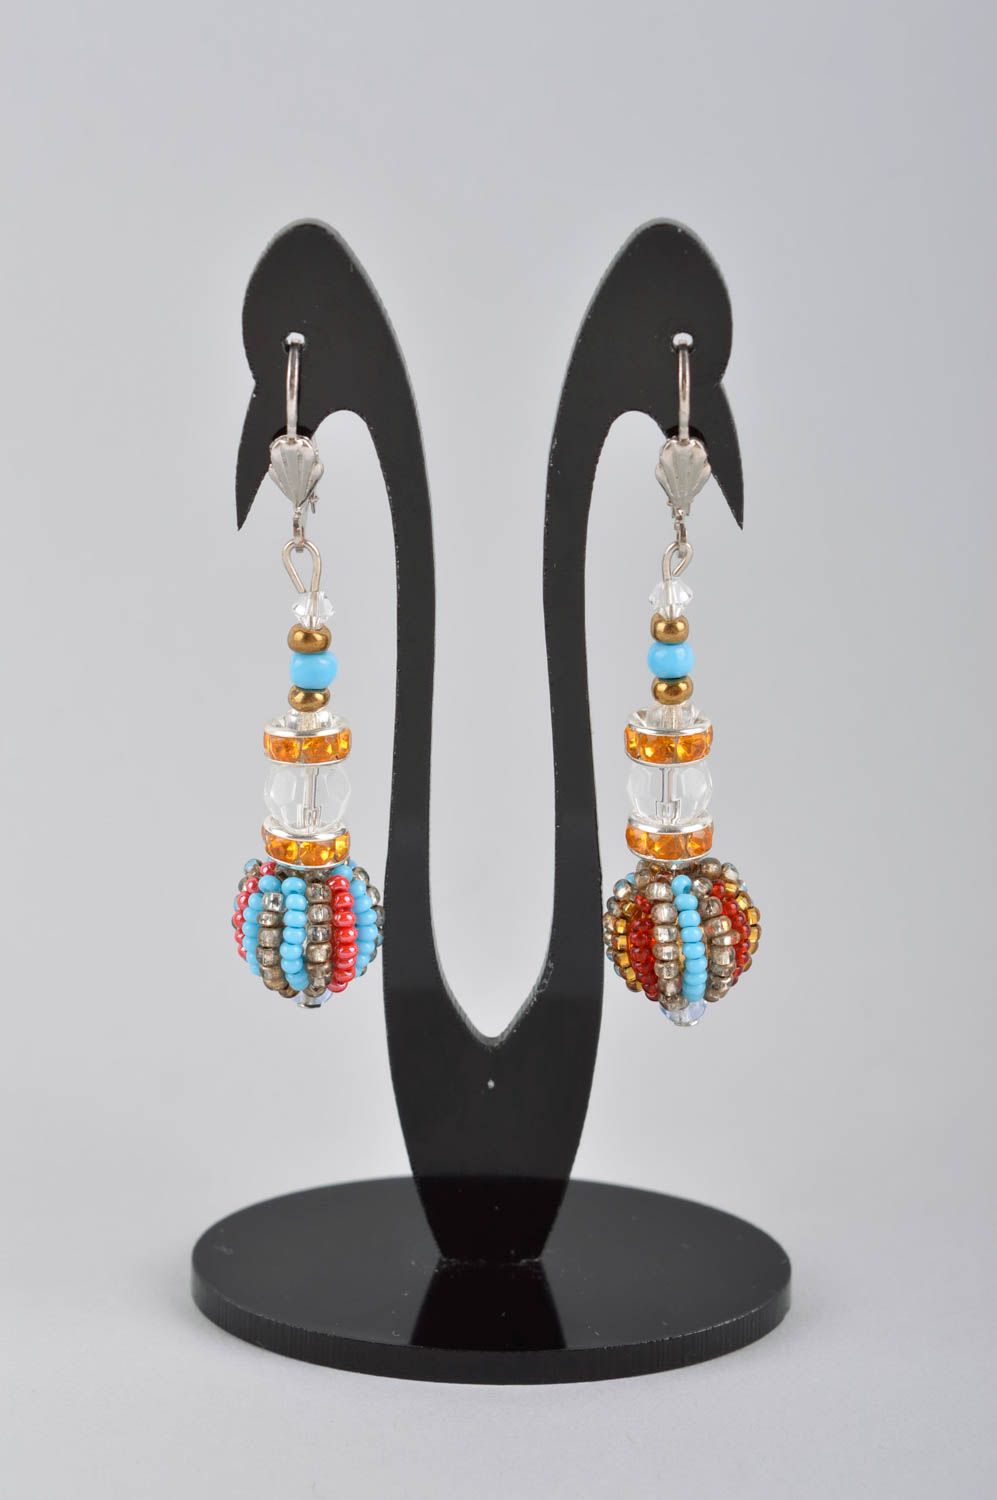 Handmade earrings ladies earrings handmade jewelry earrings for women gift ideas photo 2